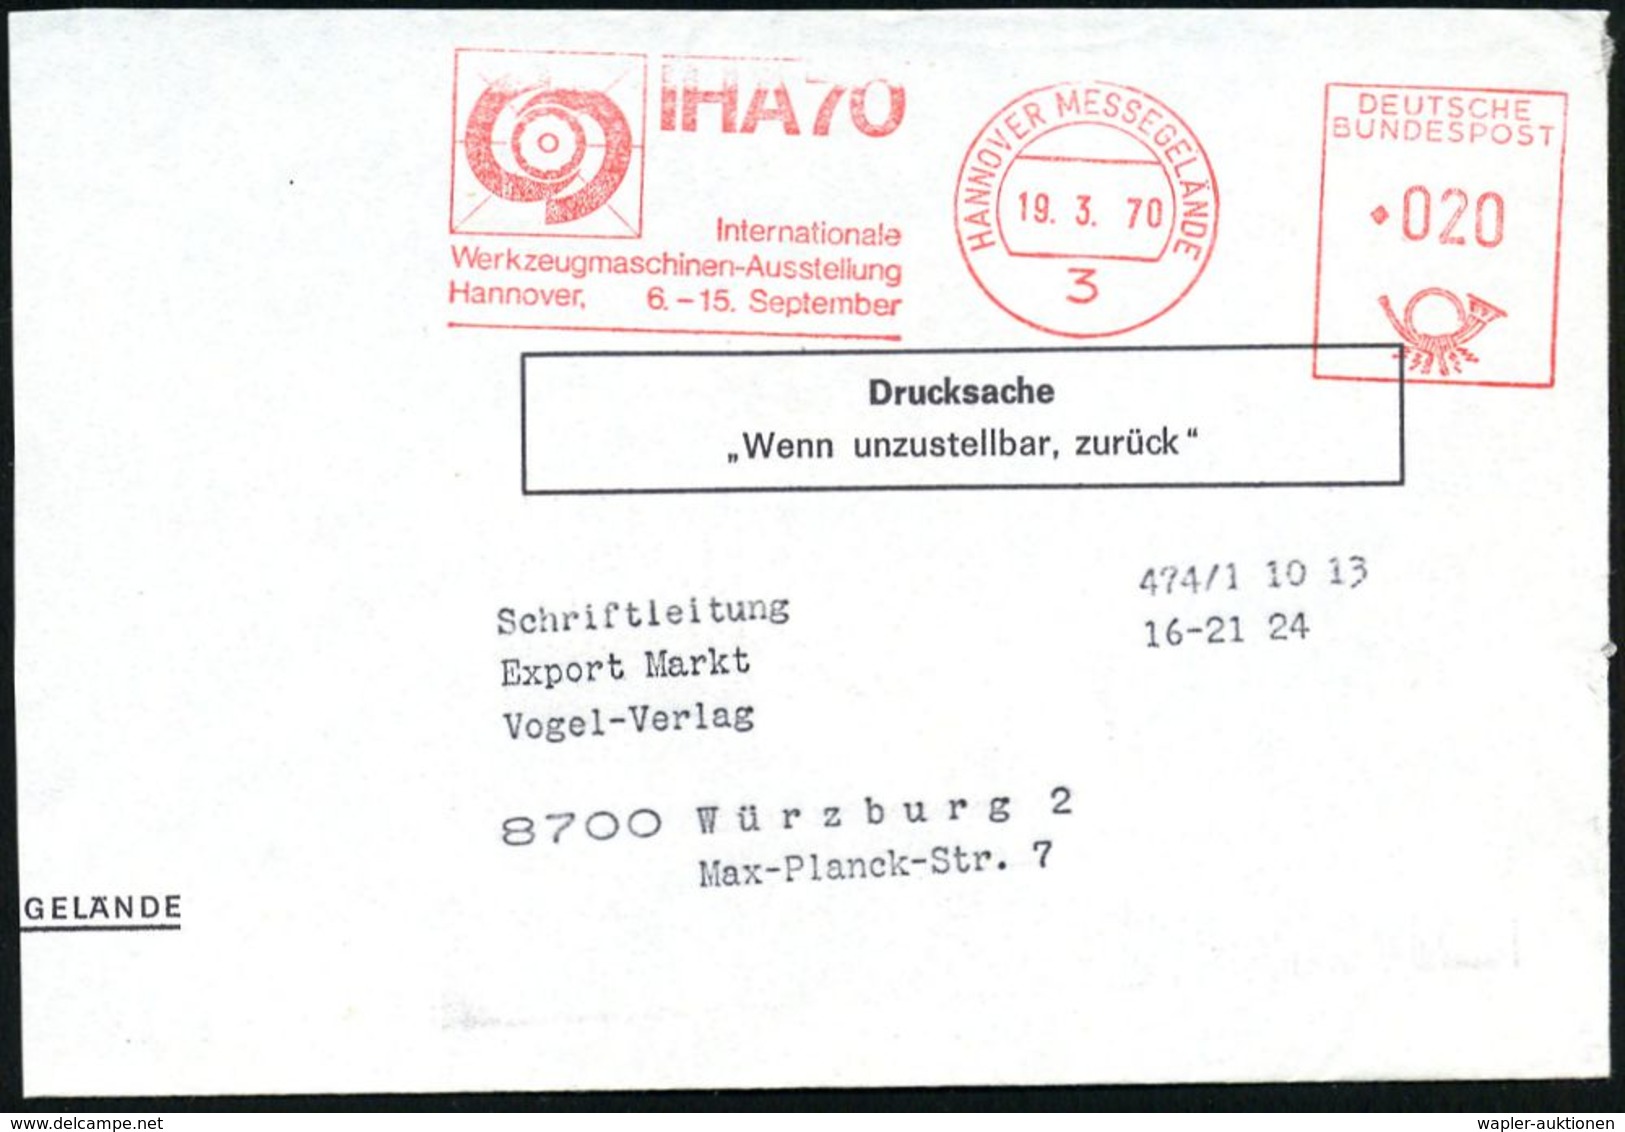 INTERNATIONALE MESSE HANNOVER : 3 HANNOVER-MESSEGELÄNDE/ HANNOVER/ MESSE'70 #bzw.# IHA'70 1970 (März) 2 Verschiedene AFS - Unclassified